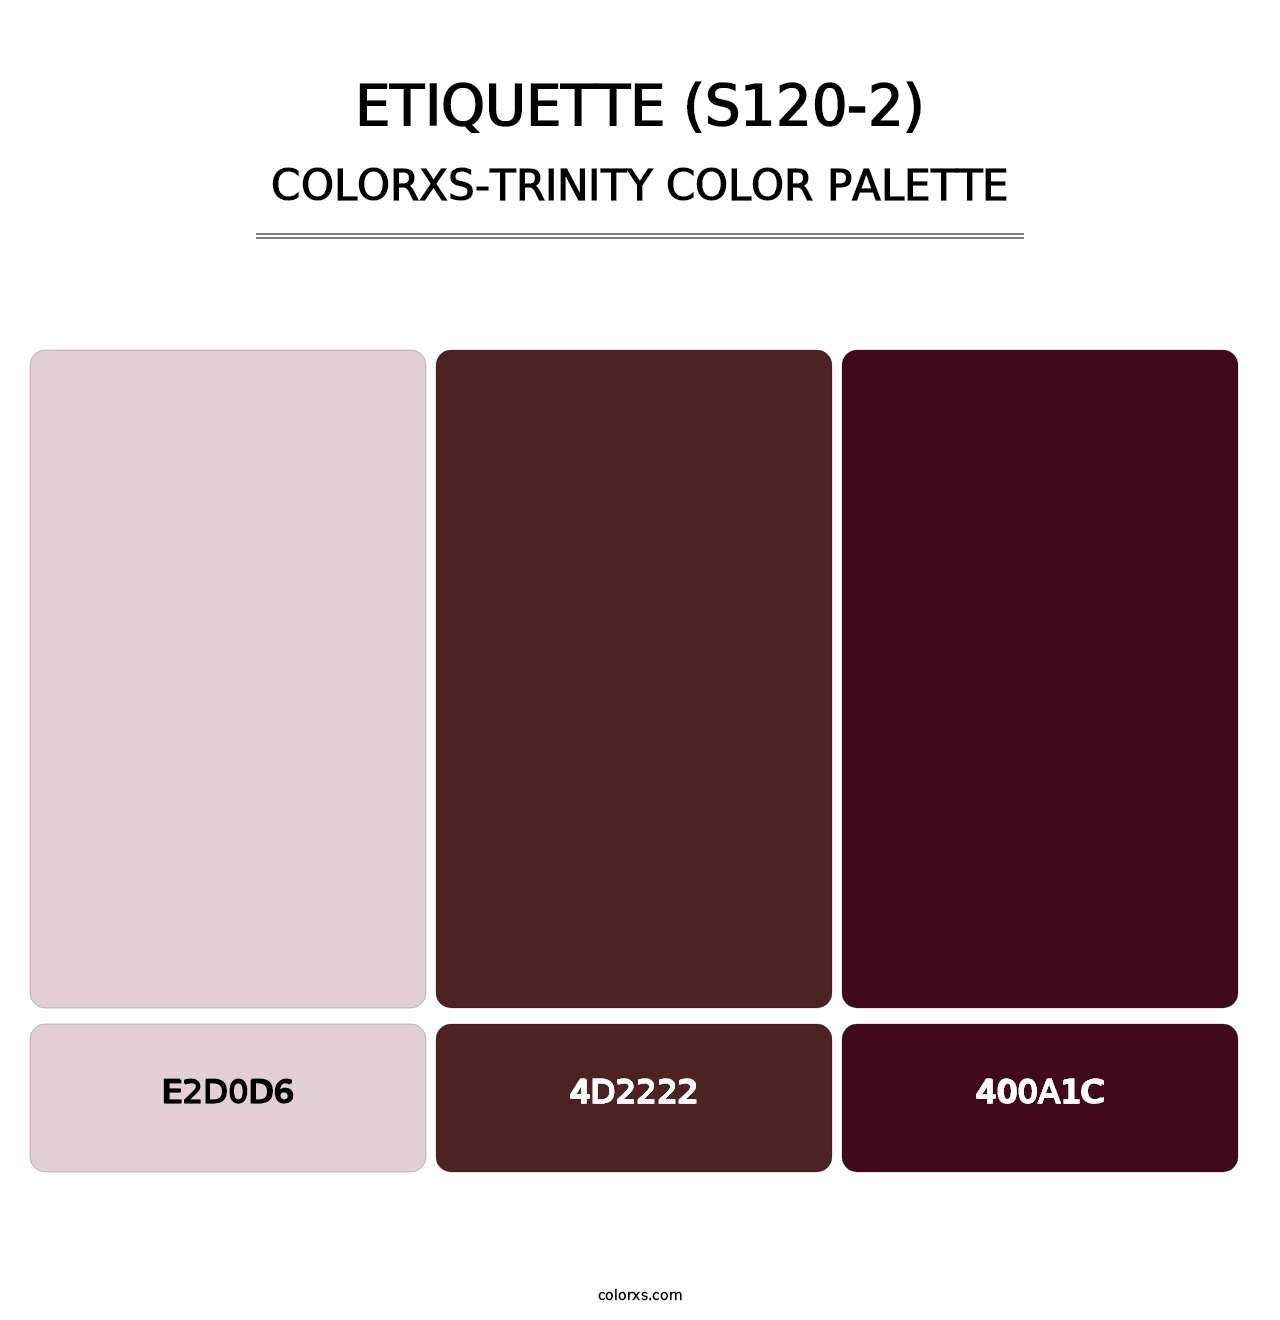 Etiquette (S120-2) - Colorxs Trinity Palette